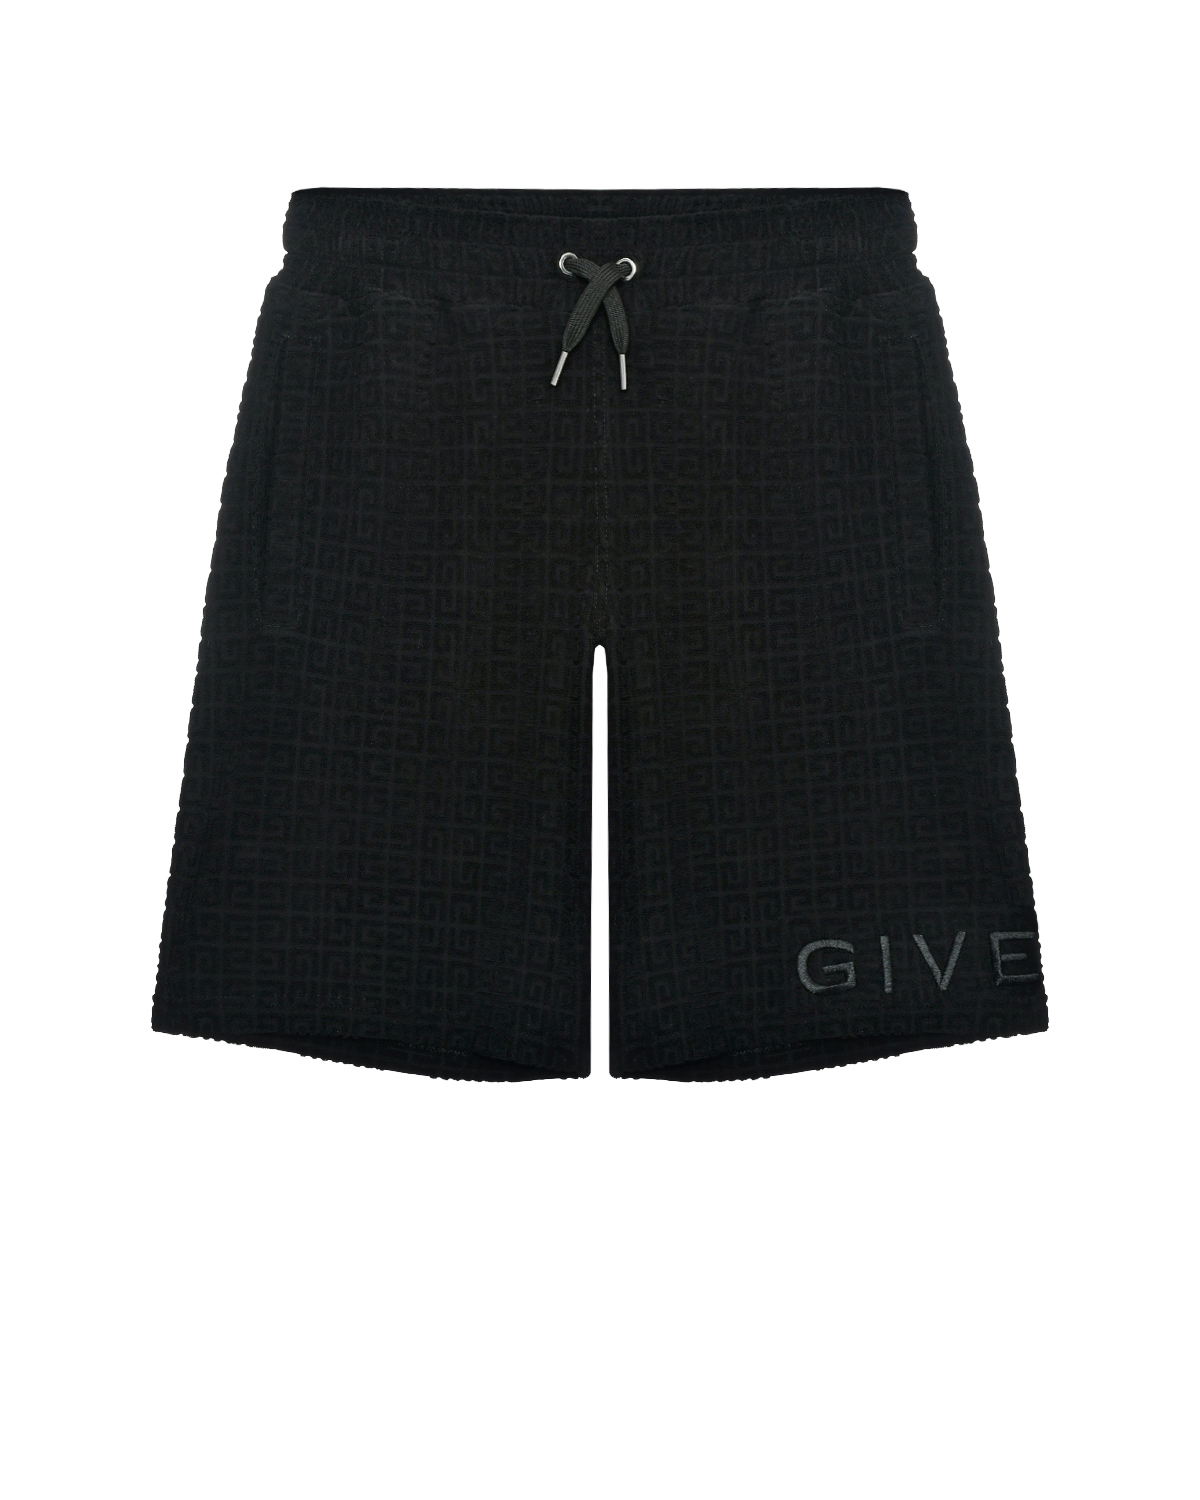 Бермуды велюровые со сплошным лого Givenchy, размер 152, цвет нет цвета - фото 1